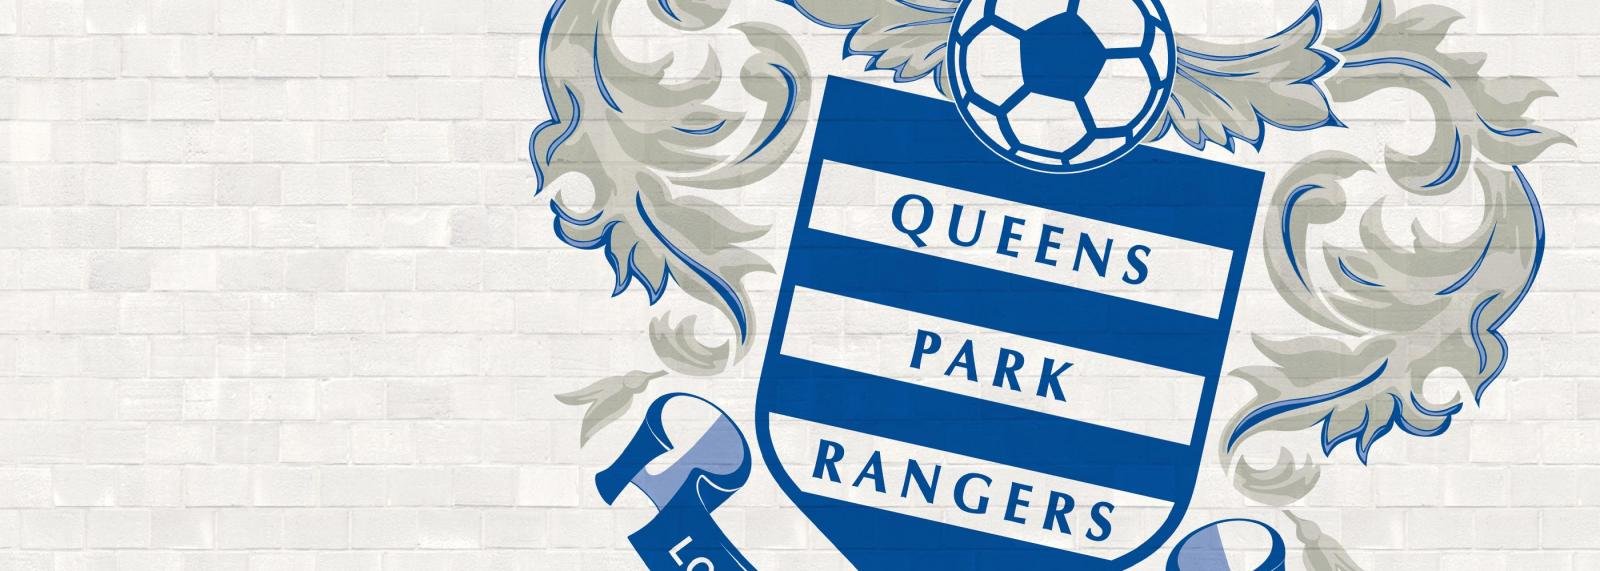 QPR’s 2015 Review: Calamity Park Rangers